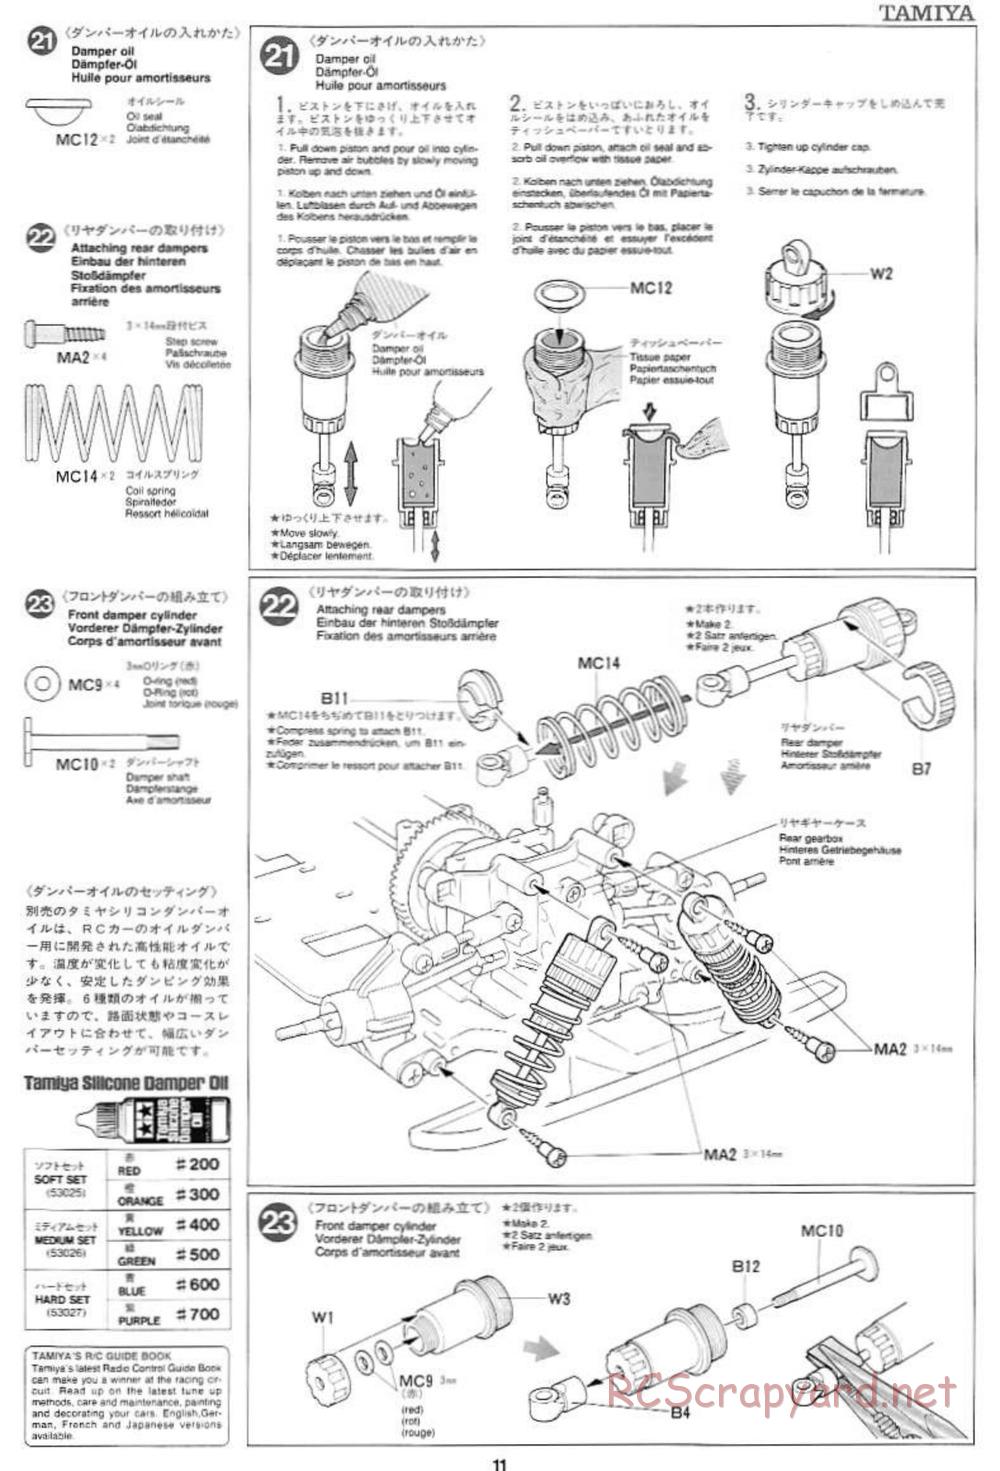 Tamiya - Mercedes CLK GTR Team Sportswear - TG10 Mk.1 Chassis - Manual - Page 11